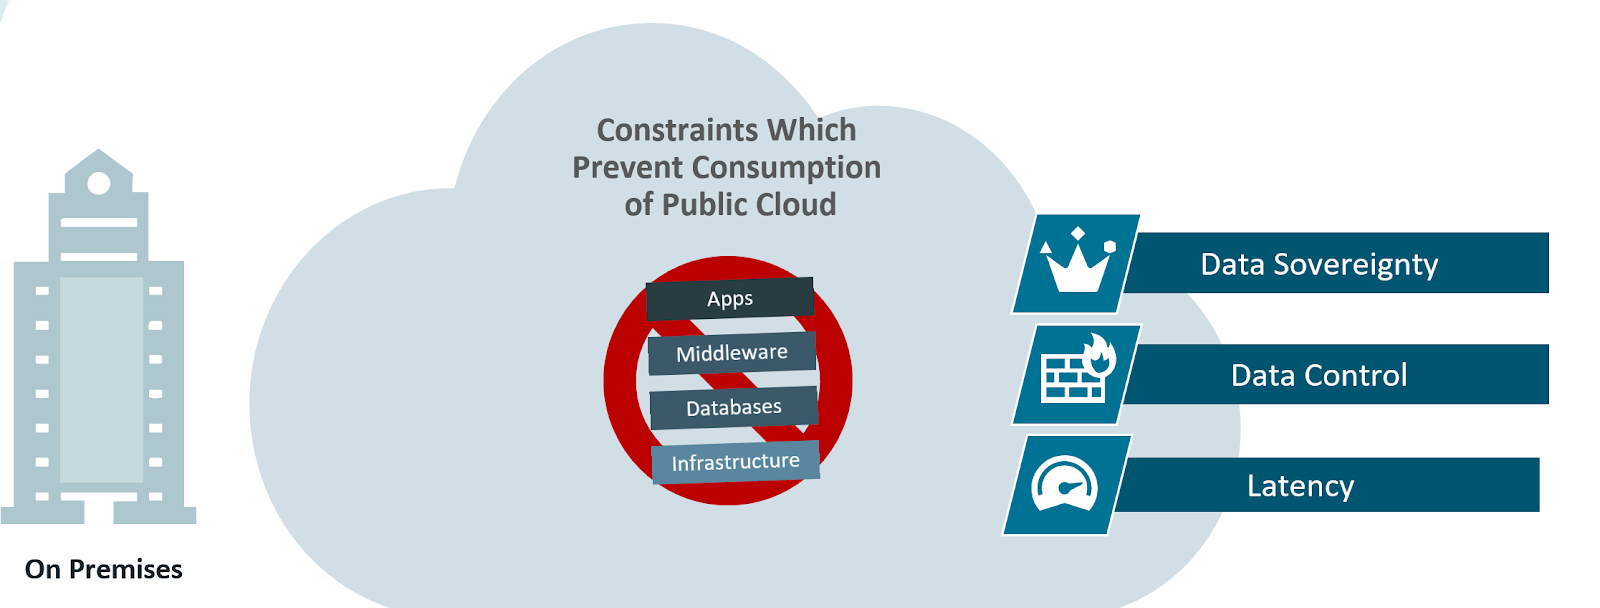 Constraints in Public Cloud